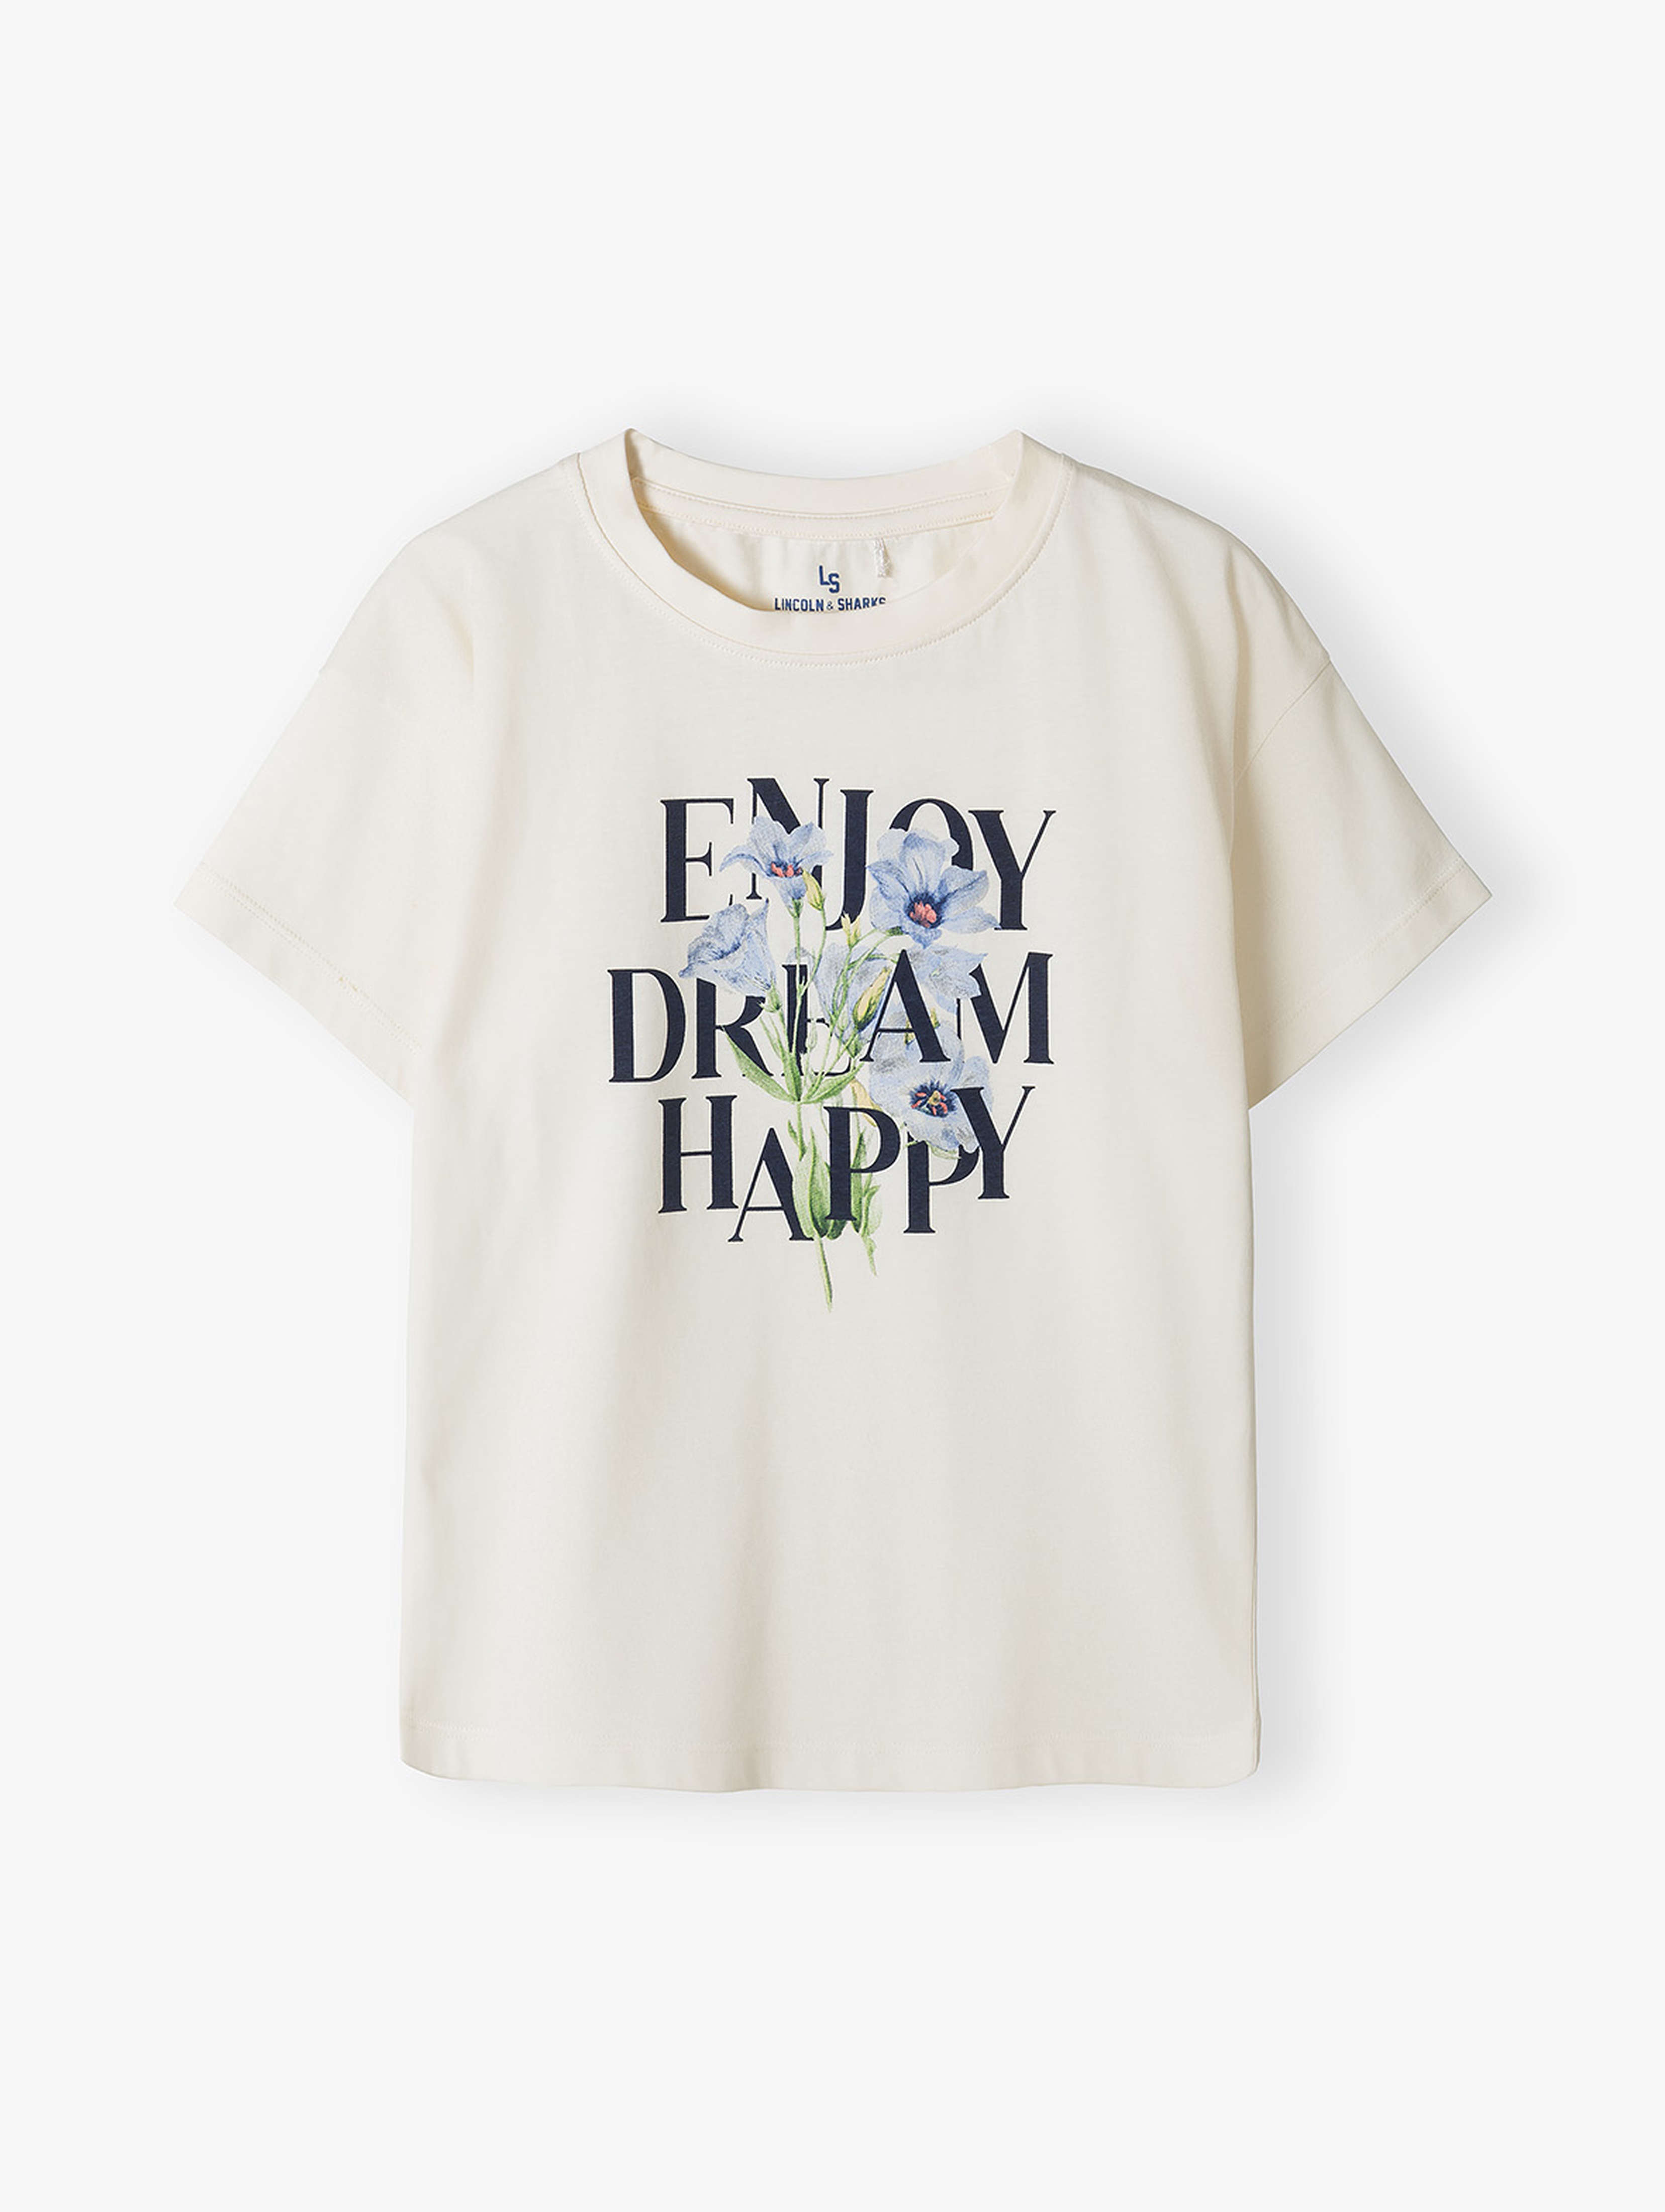 T-shirt dla dziewczynki - Enjoy, Dream, Happy- Lincoln&Sharks